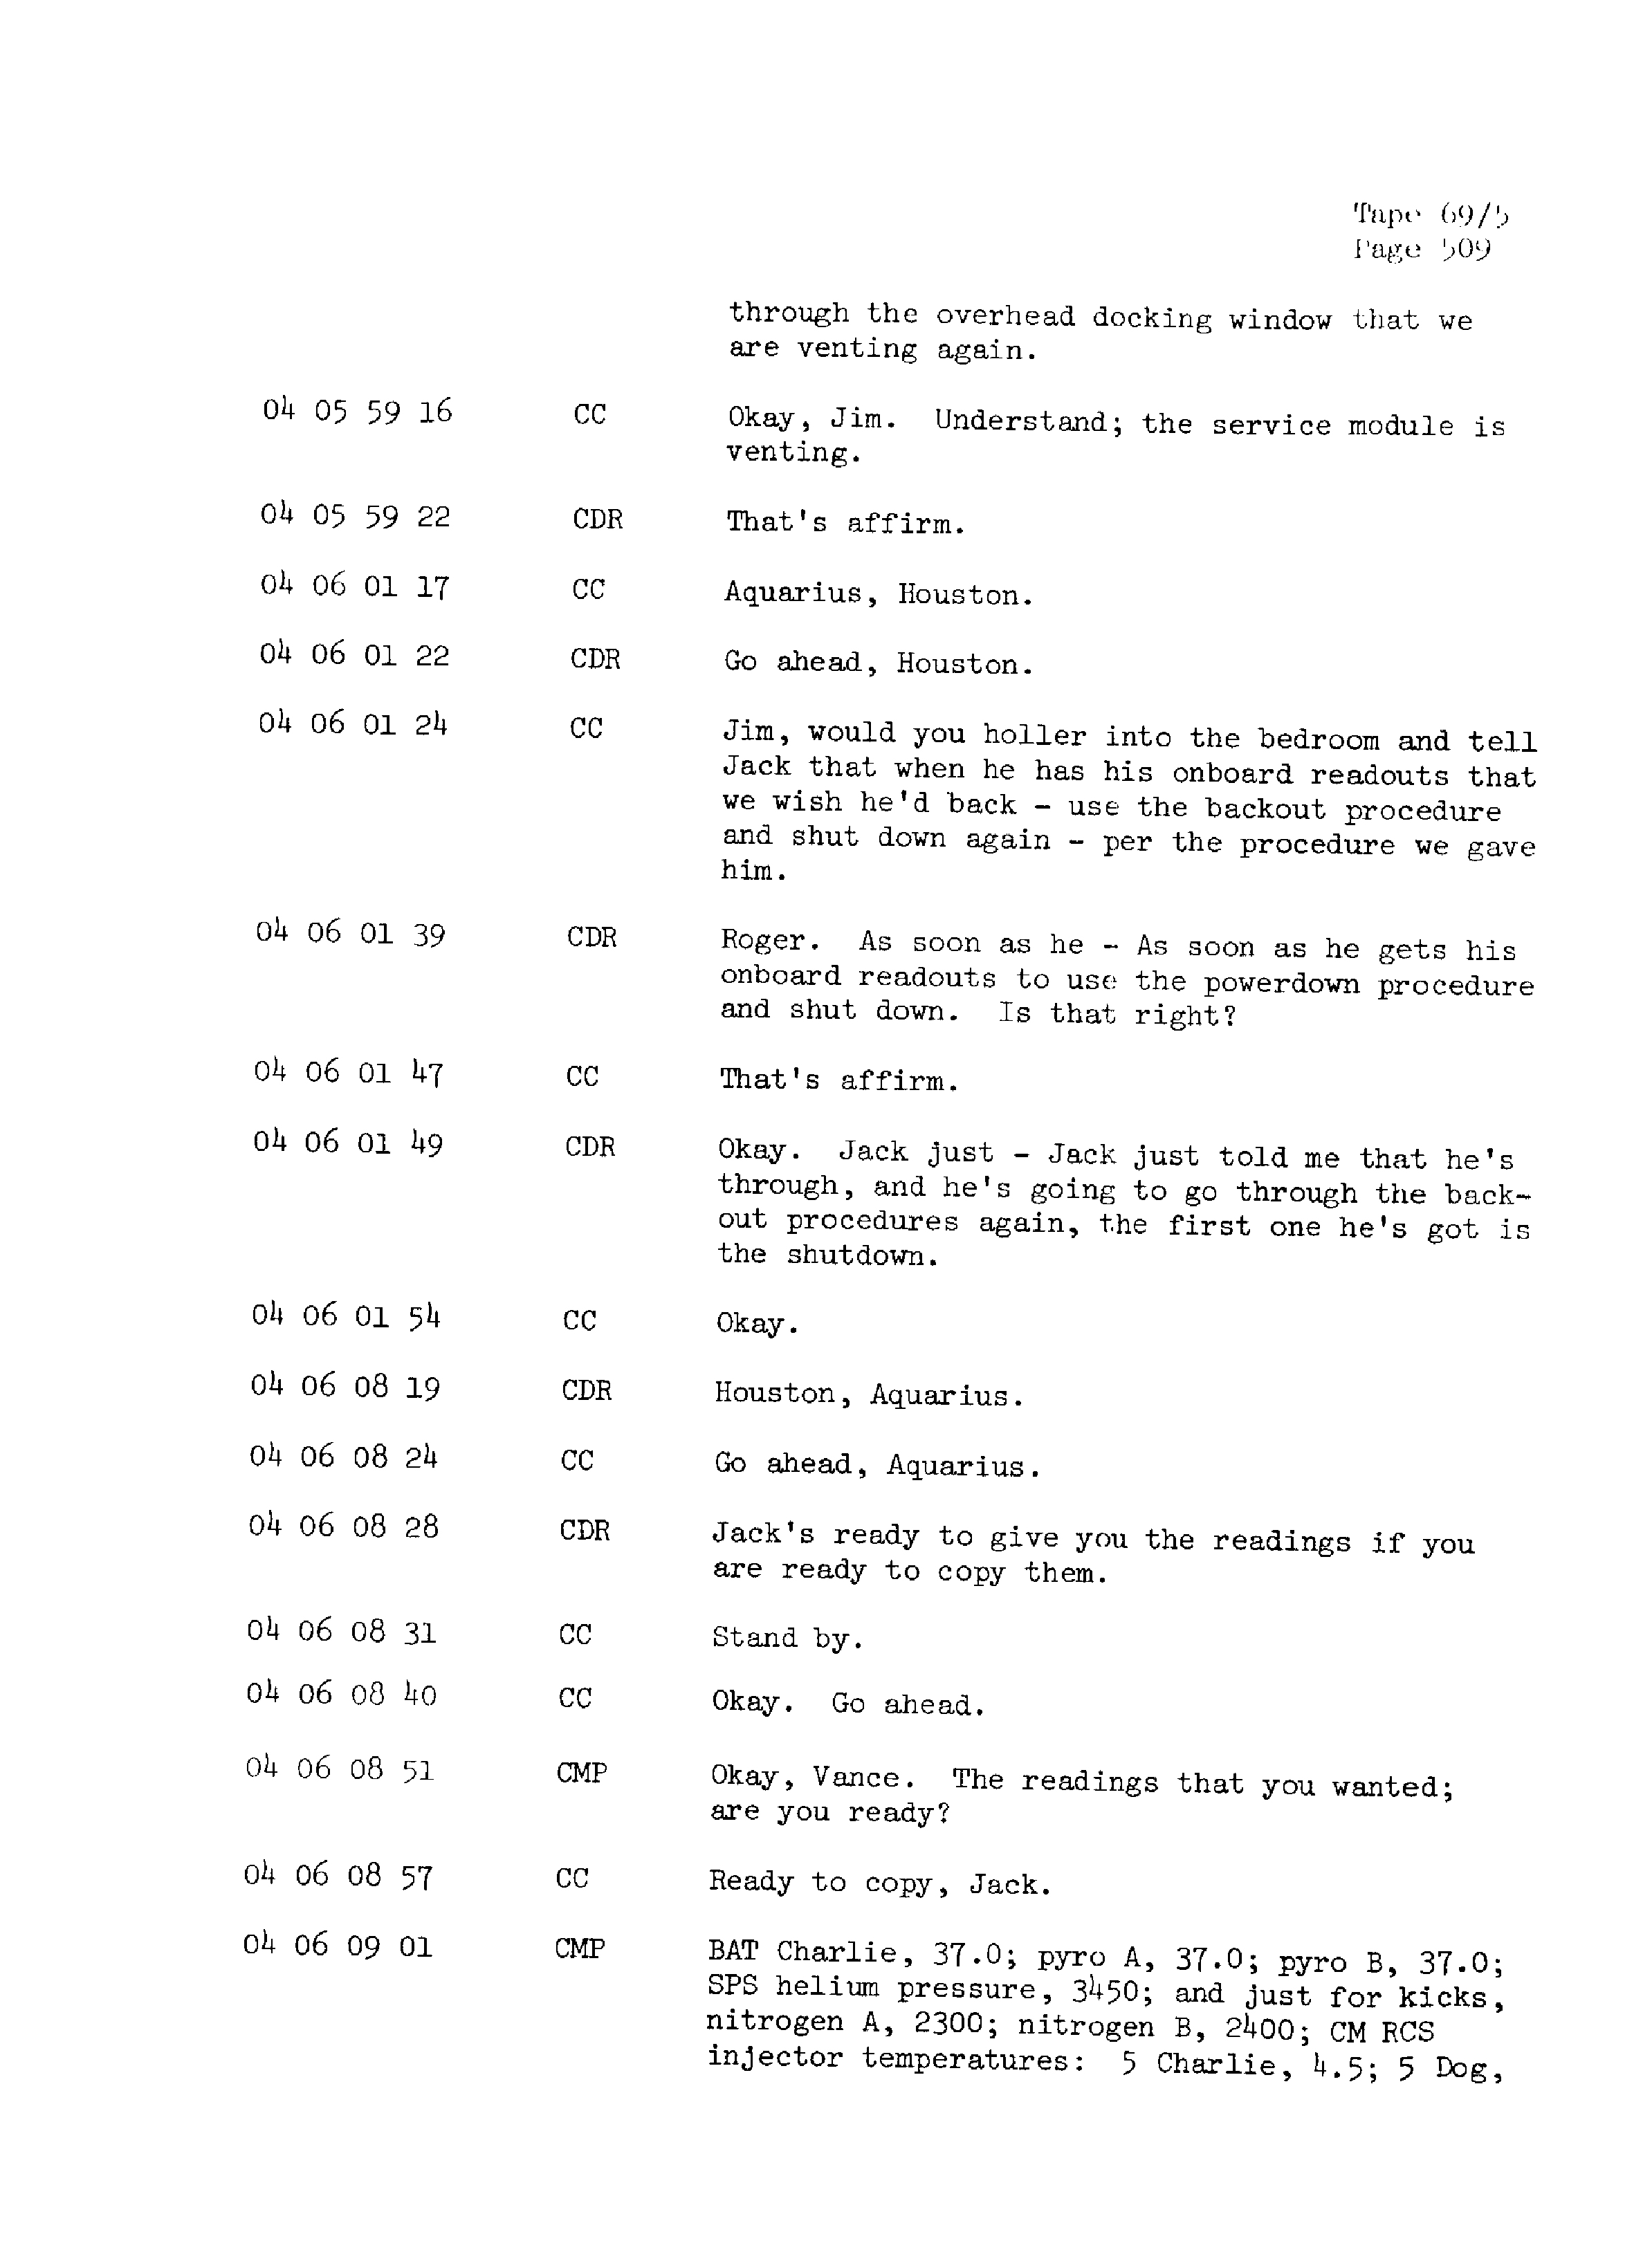 Page 516 of Apollo 13’s original transcript